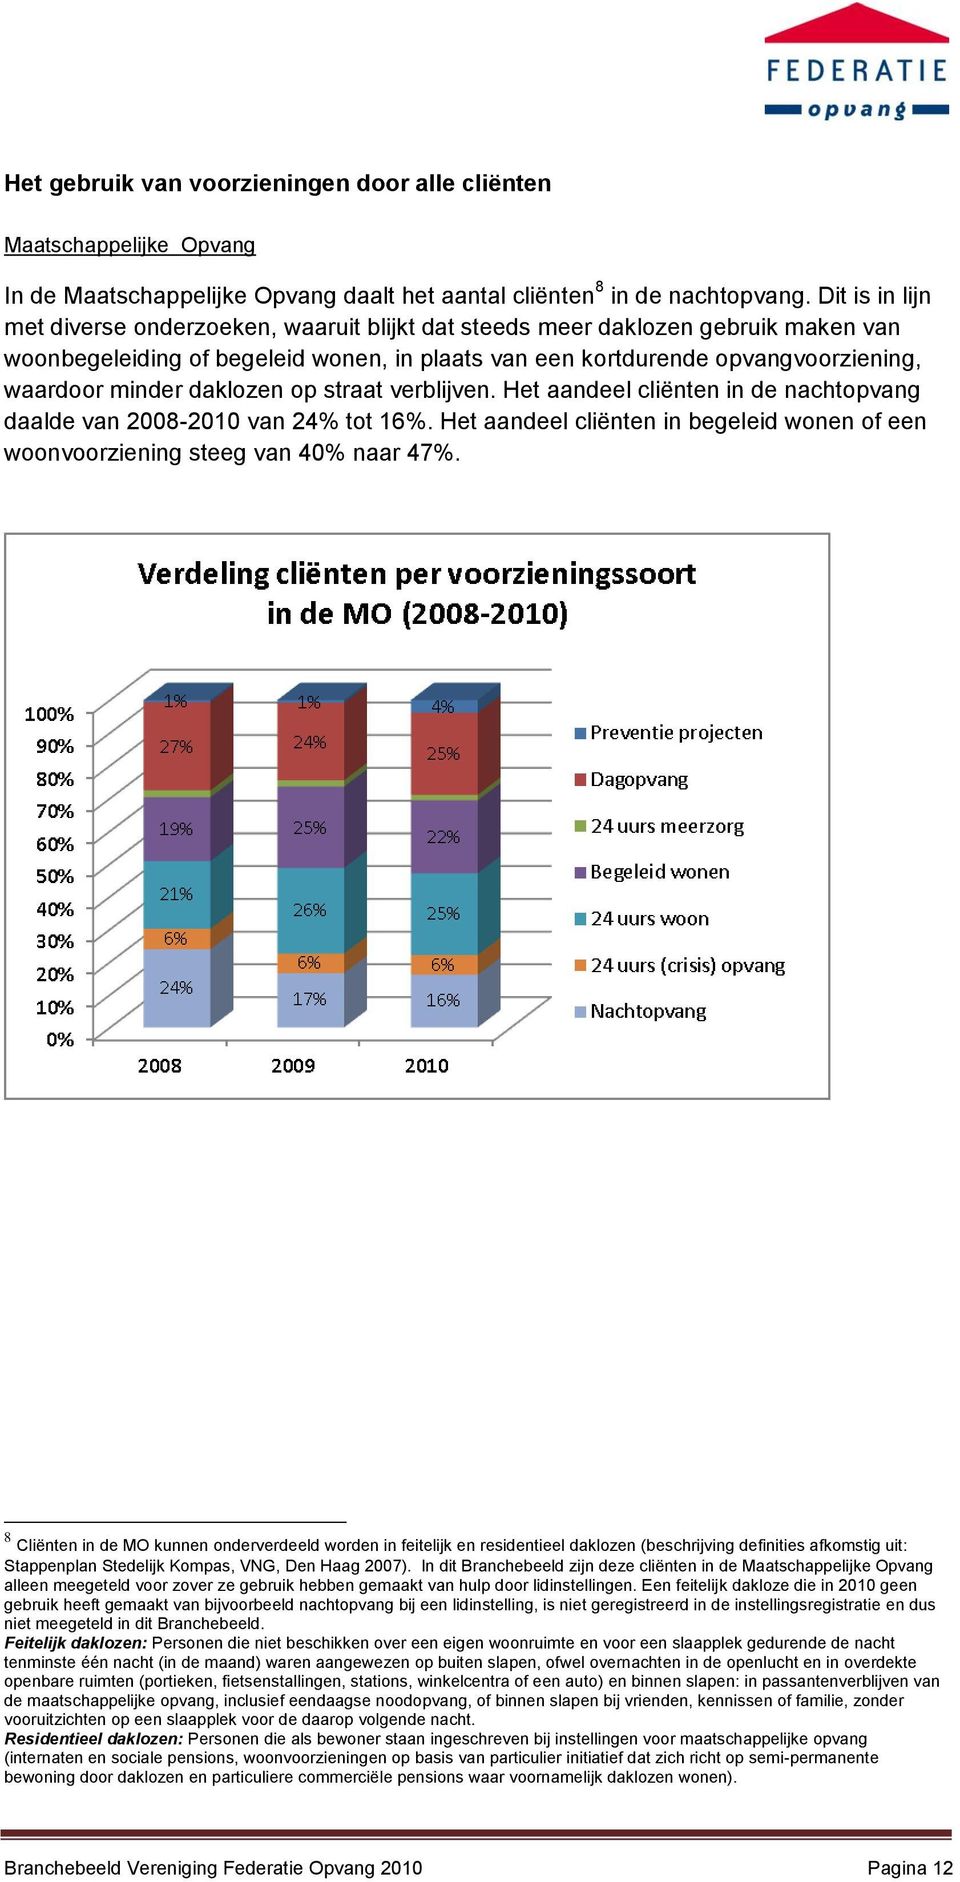 daklozen op straat verblijven. Het aandeel cliënten in de nachtopvang daalde van 2008-2010 van 24% tot 16%. Het aandeel cliënten in begeleid wonen of een woonvoorziening steeg van 40% naar 47%.